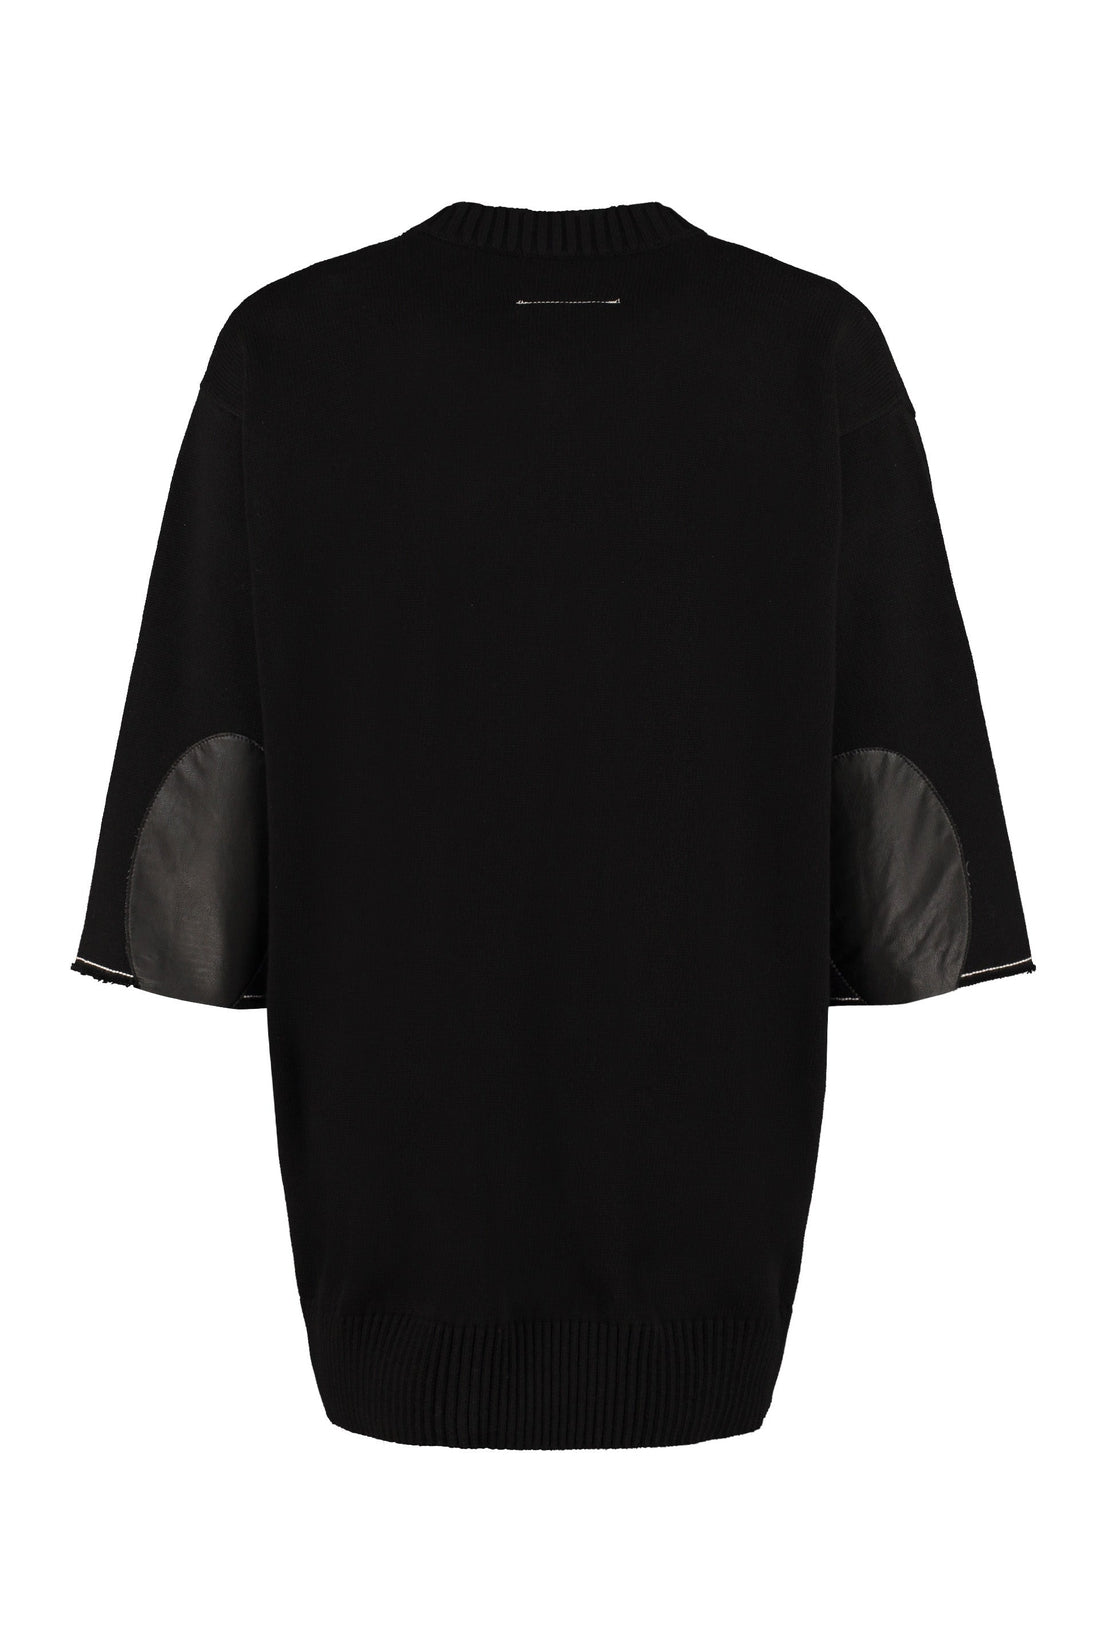 MM6 Maison Margiela-OUTLET-SALE-Cotton V-neck sweater-ARCHIVIST